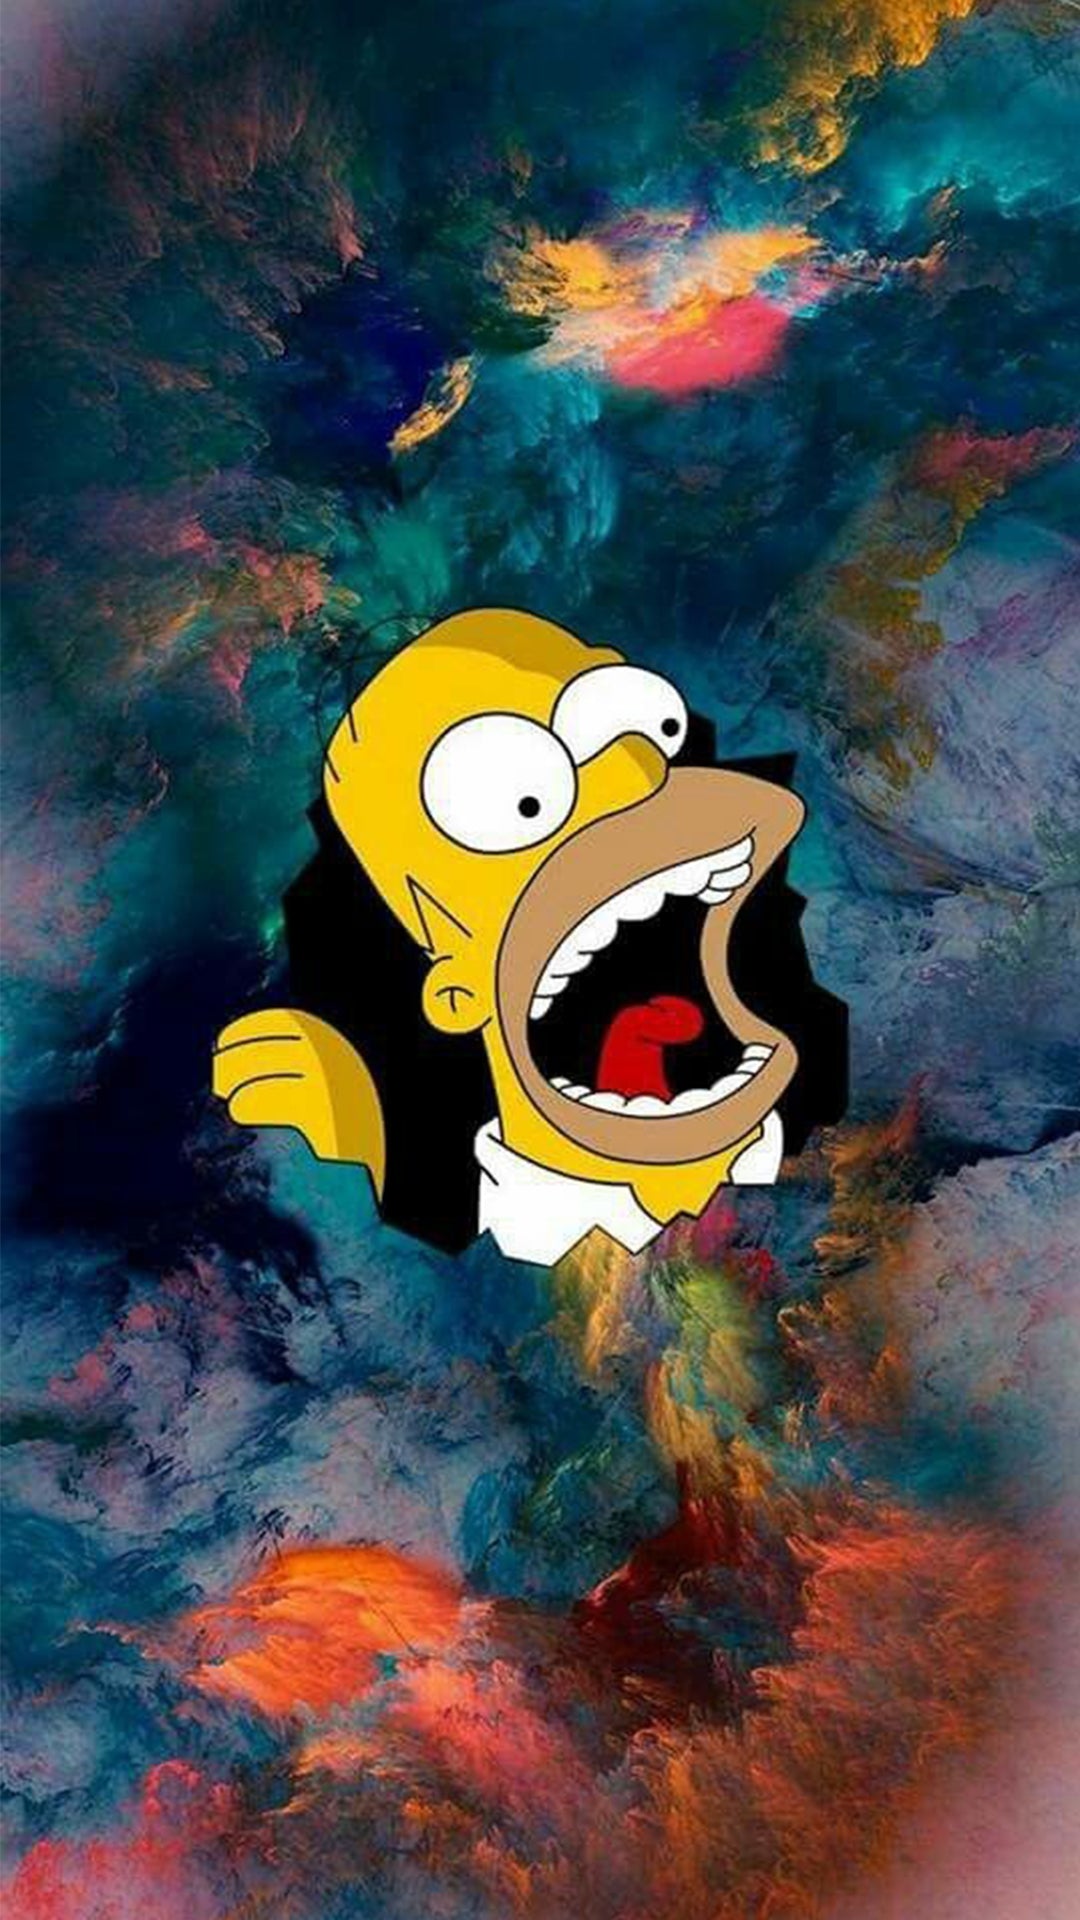 Tête d’Homer Simpson entre les nuages colorés, il essaie de les manger avec la bouche grande ouverte.